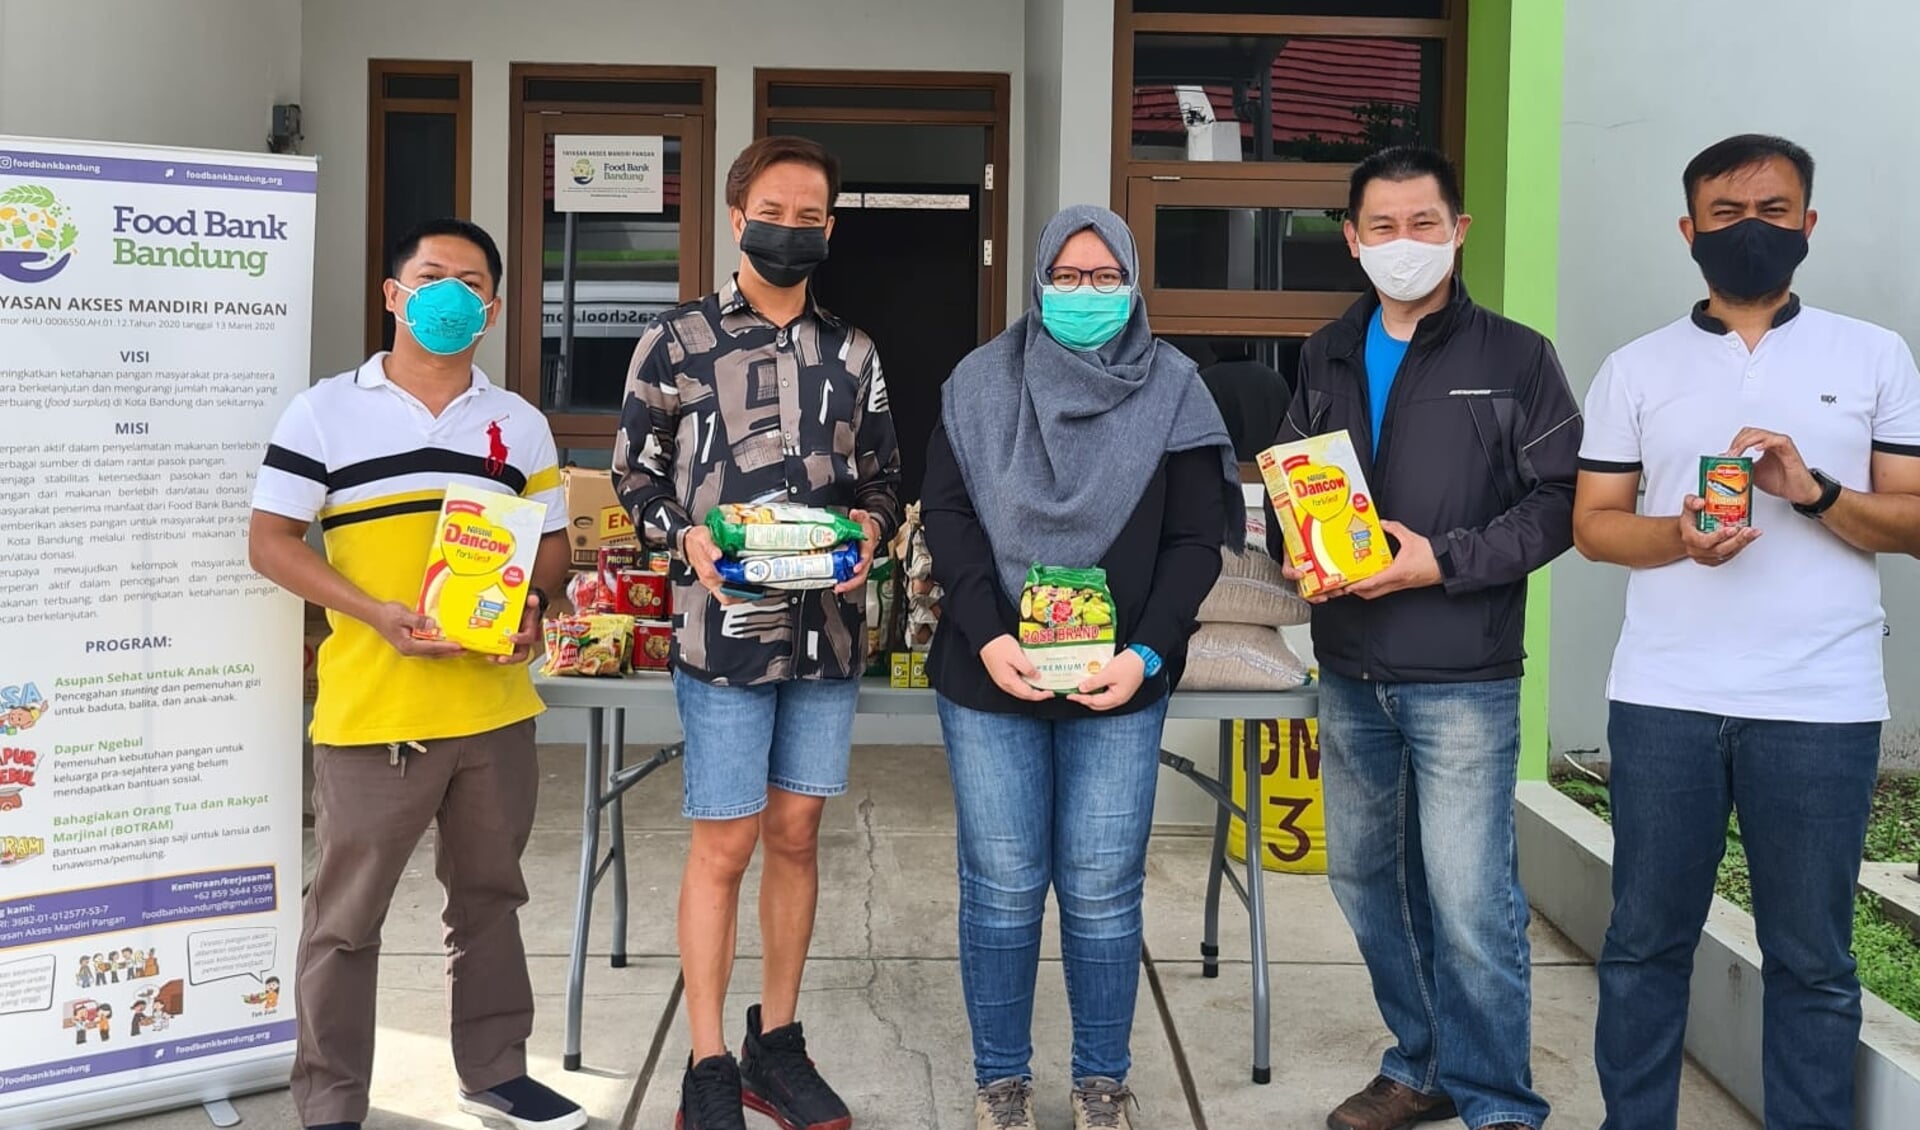 Team van de voedselbank in Bandung